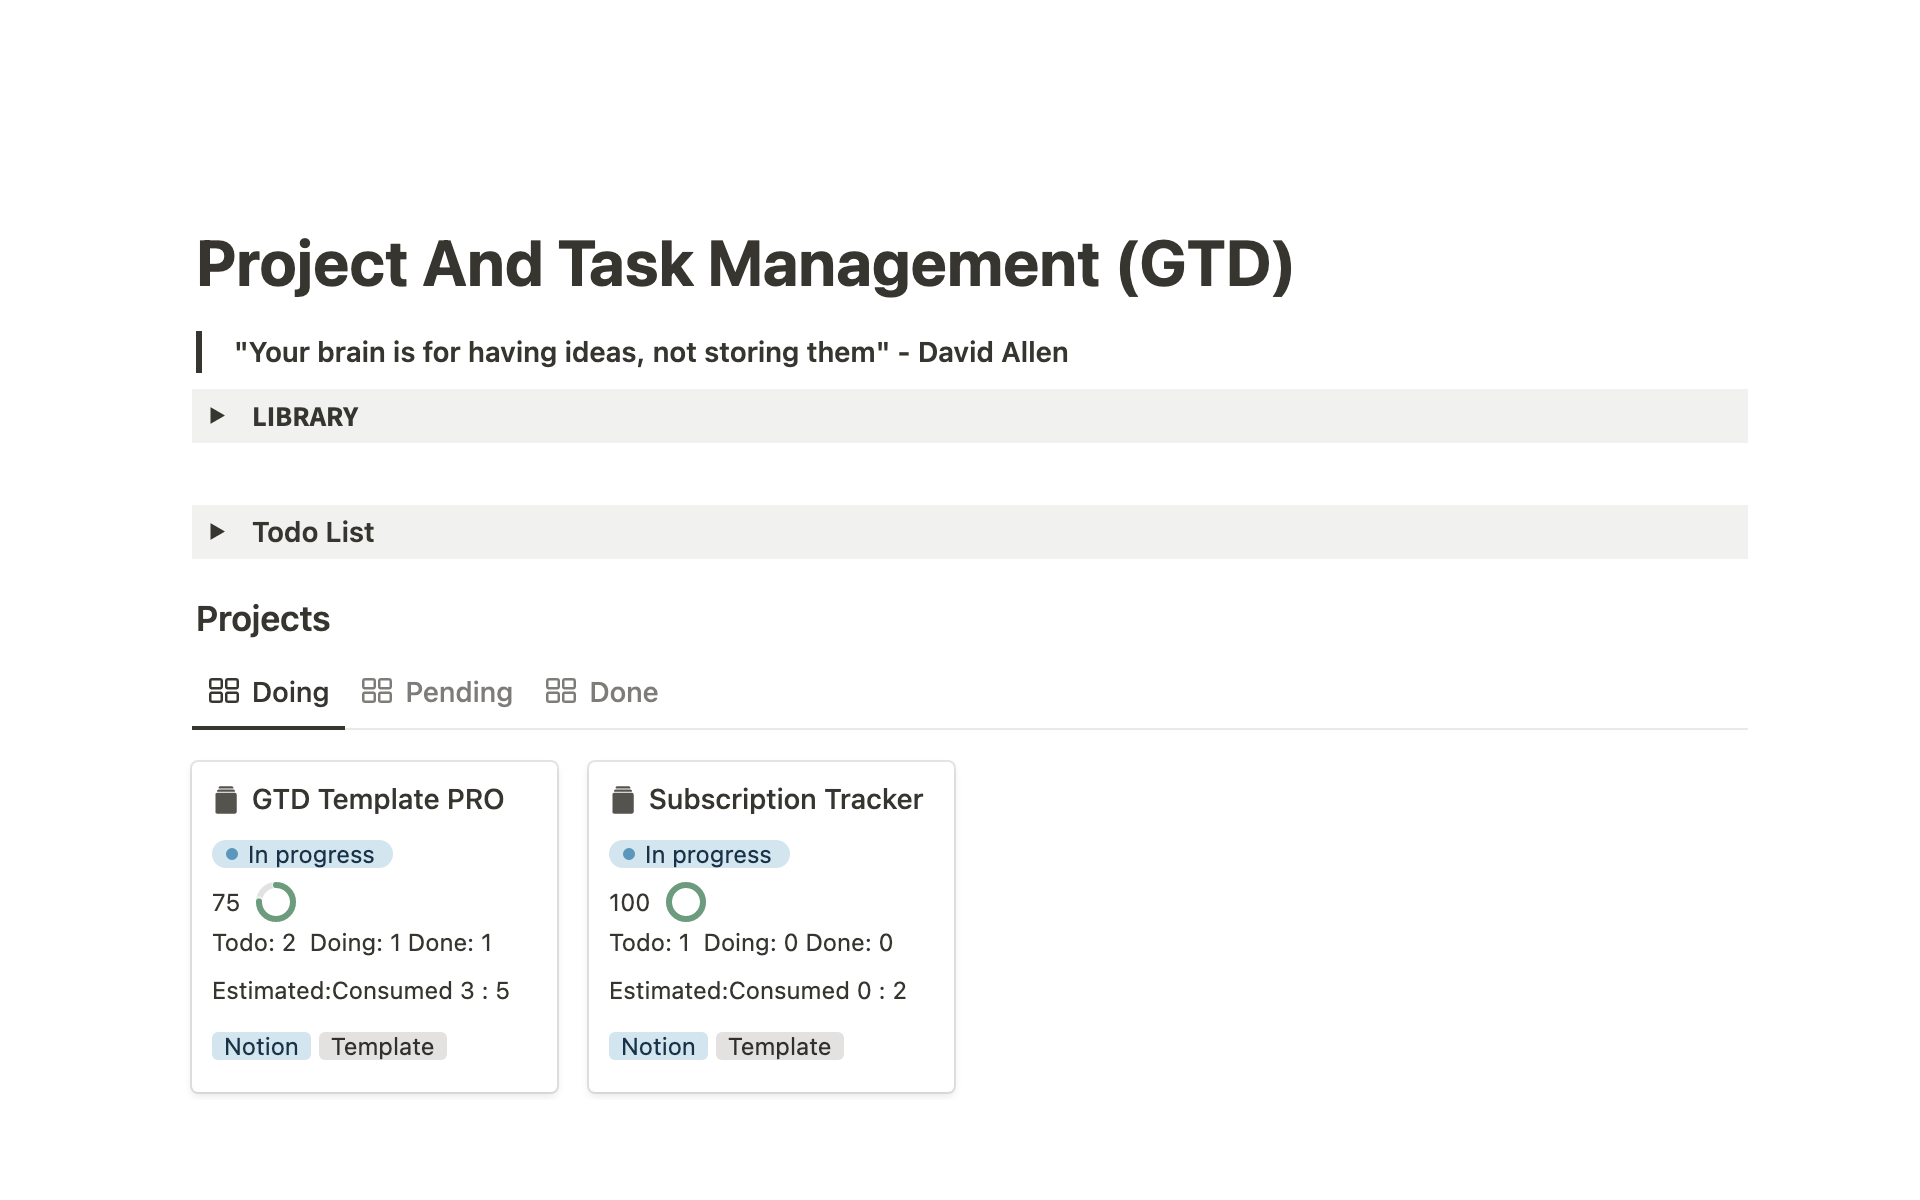 Aperçu du modèle de Project And Task Management (GTD)